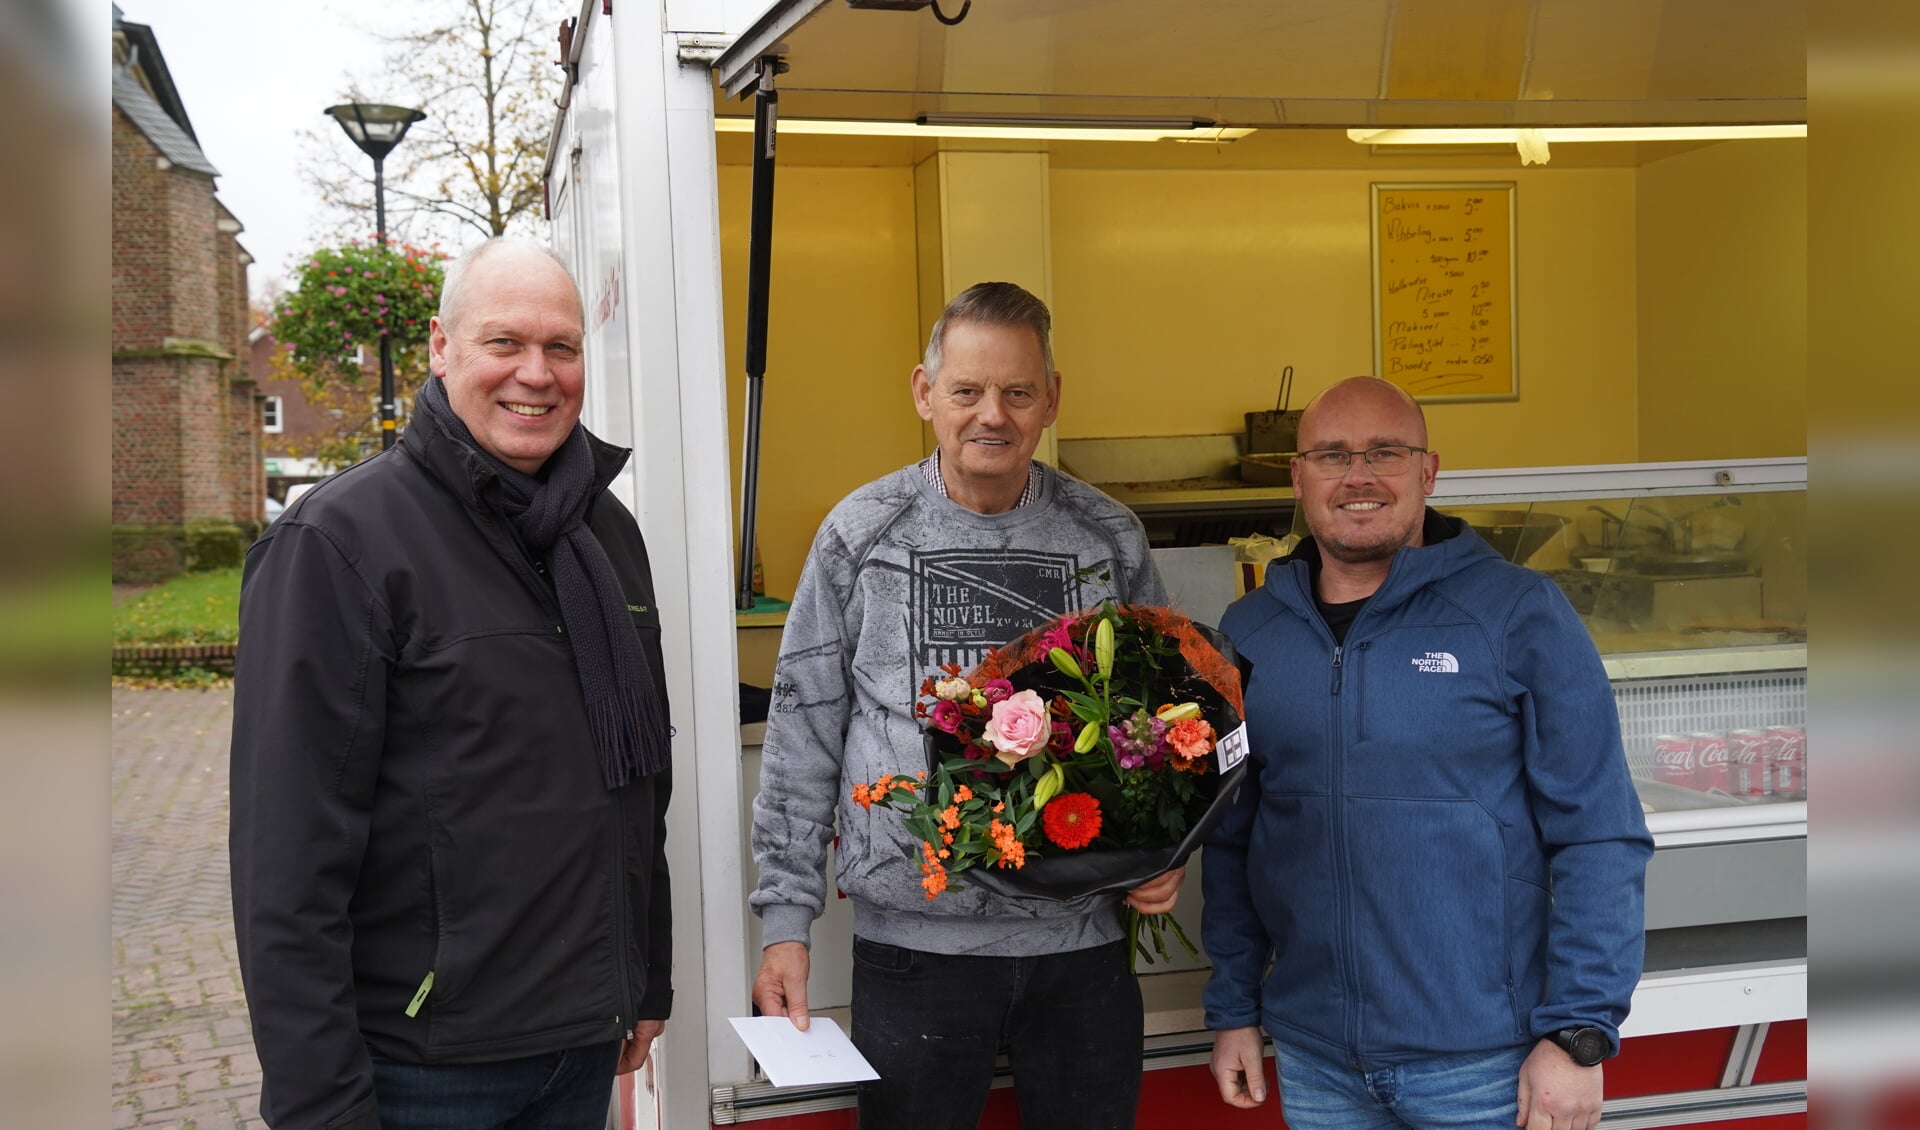 Harm Takke, Jan Bosman en Arjan Siebelink. Foto: Frank Vinkenvleugel